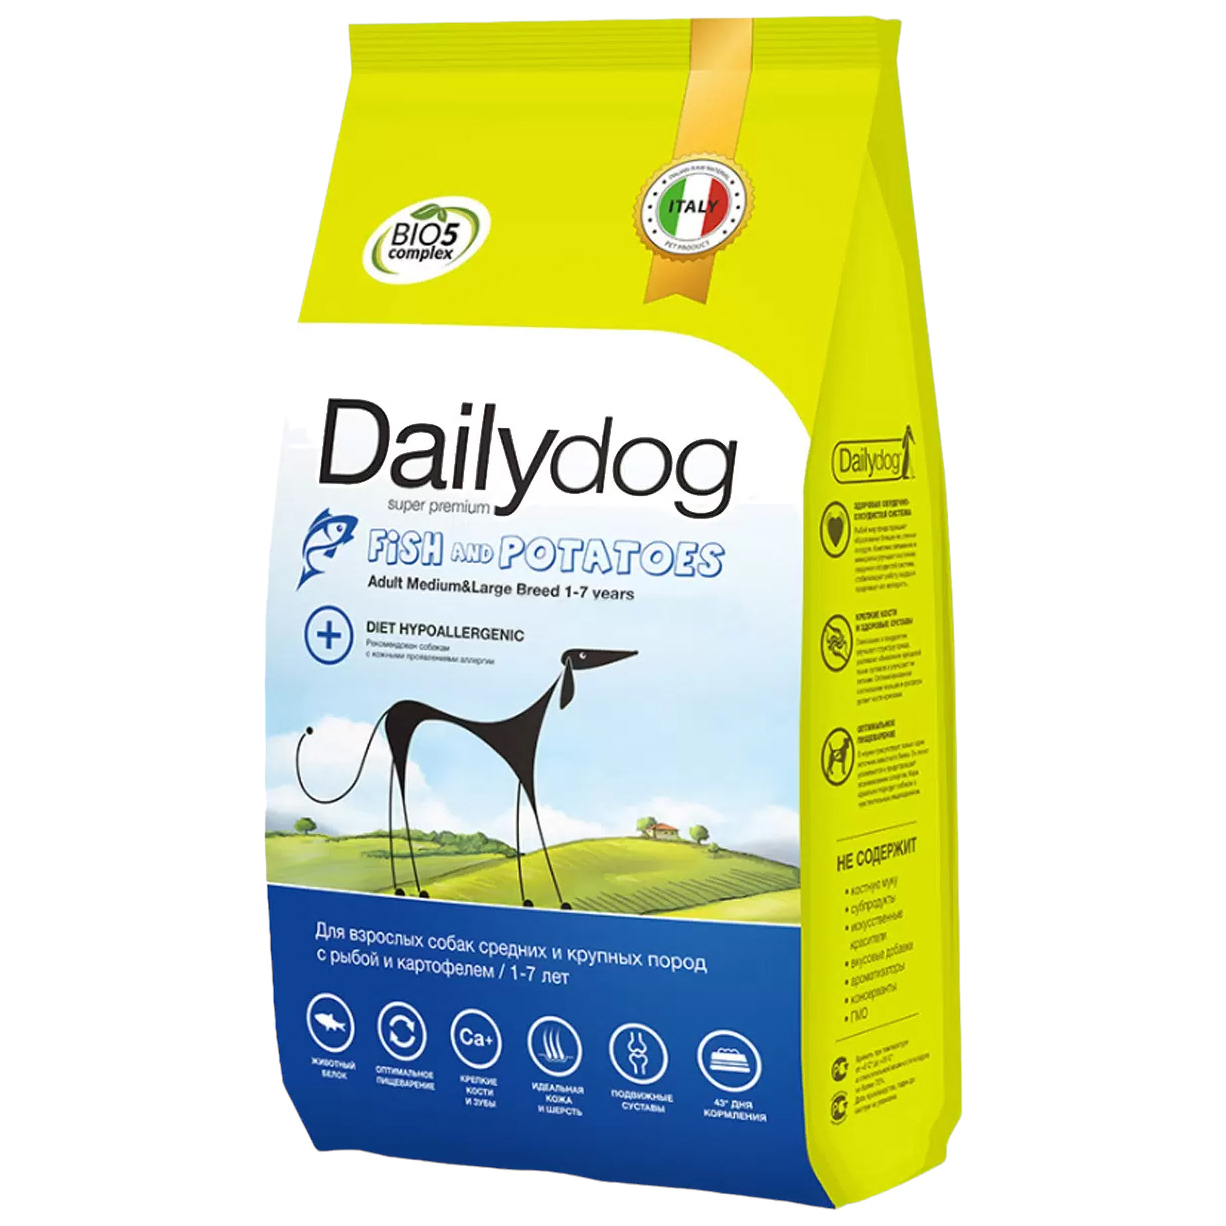 Сухой корм для собак Dailydog Adult Medium-Large Breed, рыба и картофель, 3кг